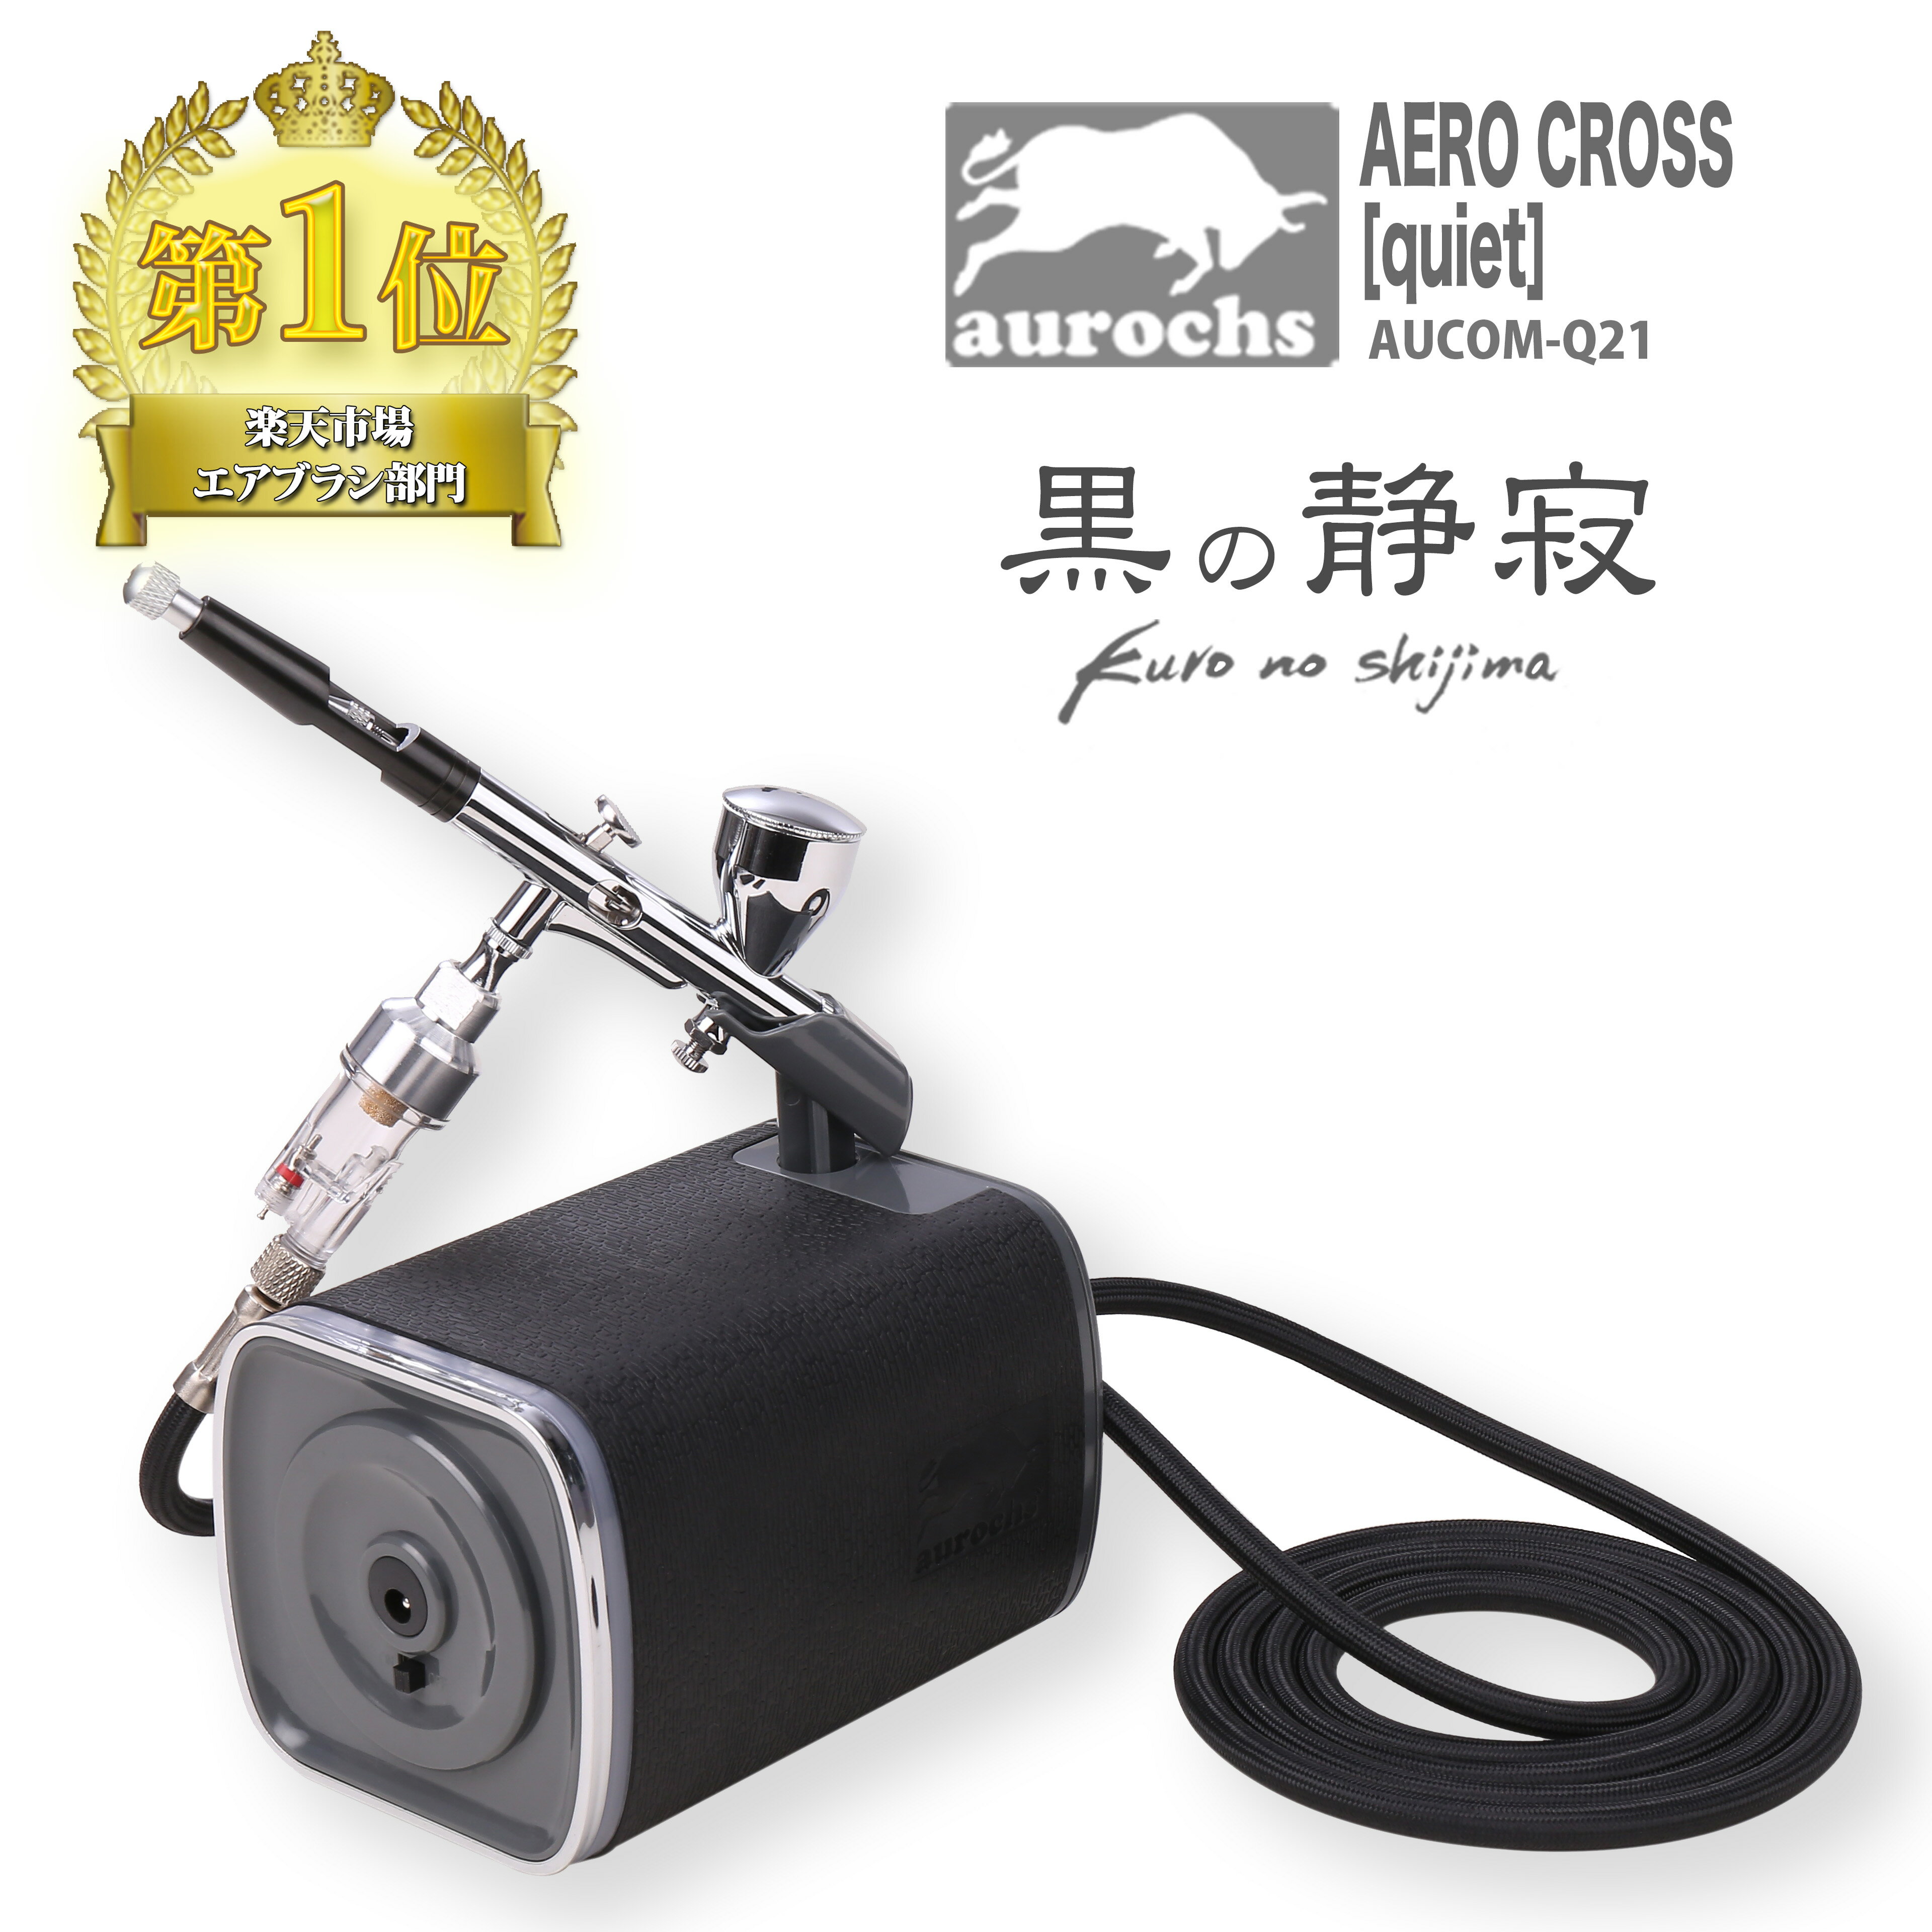 aurochs 静音 エアコンプレッサー エアブラシ セット AERO CROSS quiet オーロックス ハンドピース ダブルアクション 口径0.3mm 小型 軽量 プラモデル 塗装 ペイント エアーブラシ 初心者 工具…